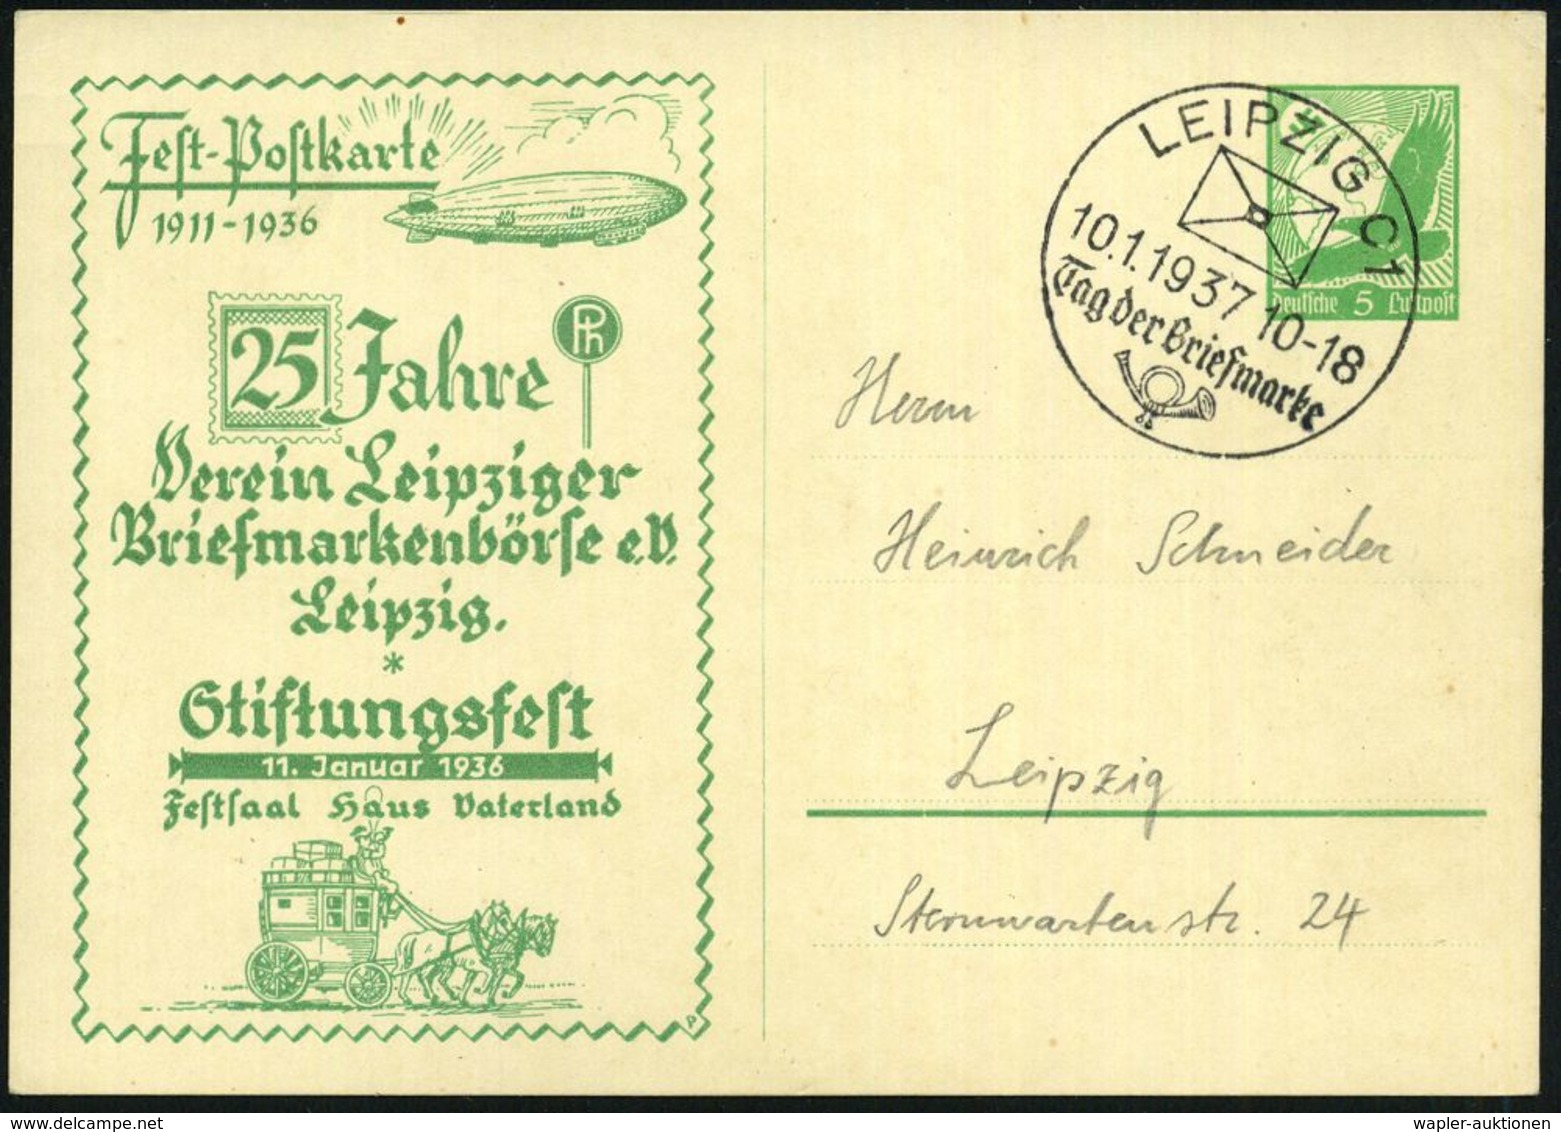 LEIPZIG C 1/ Tag Der Briefmarke 1937 (10.1.) SSt Auf PP 5 Pf. Adler, Grün: Fest-Postkarte..Stiftungsfest, 11.Jan.1936/.. - Día Del Sello